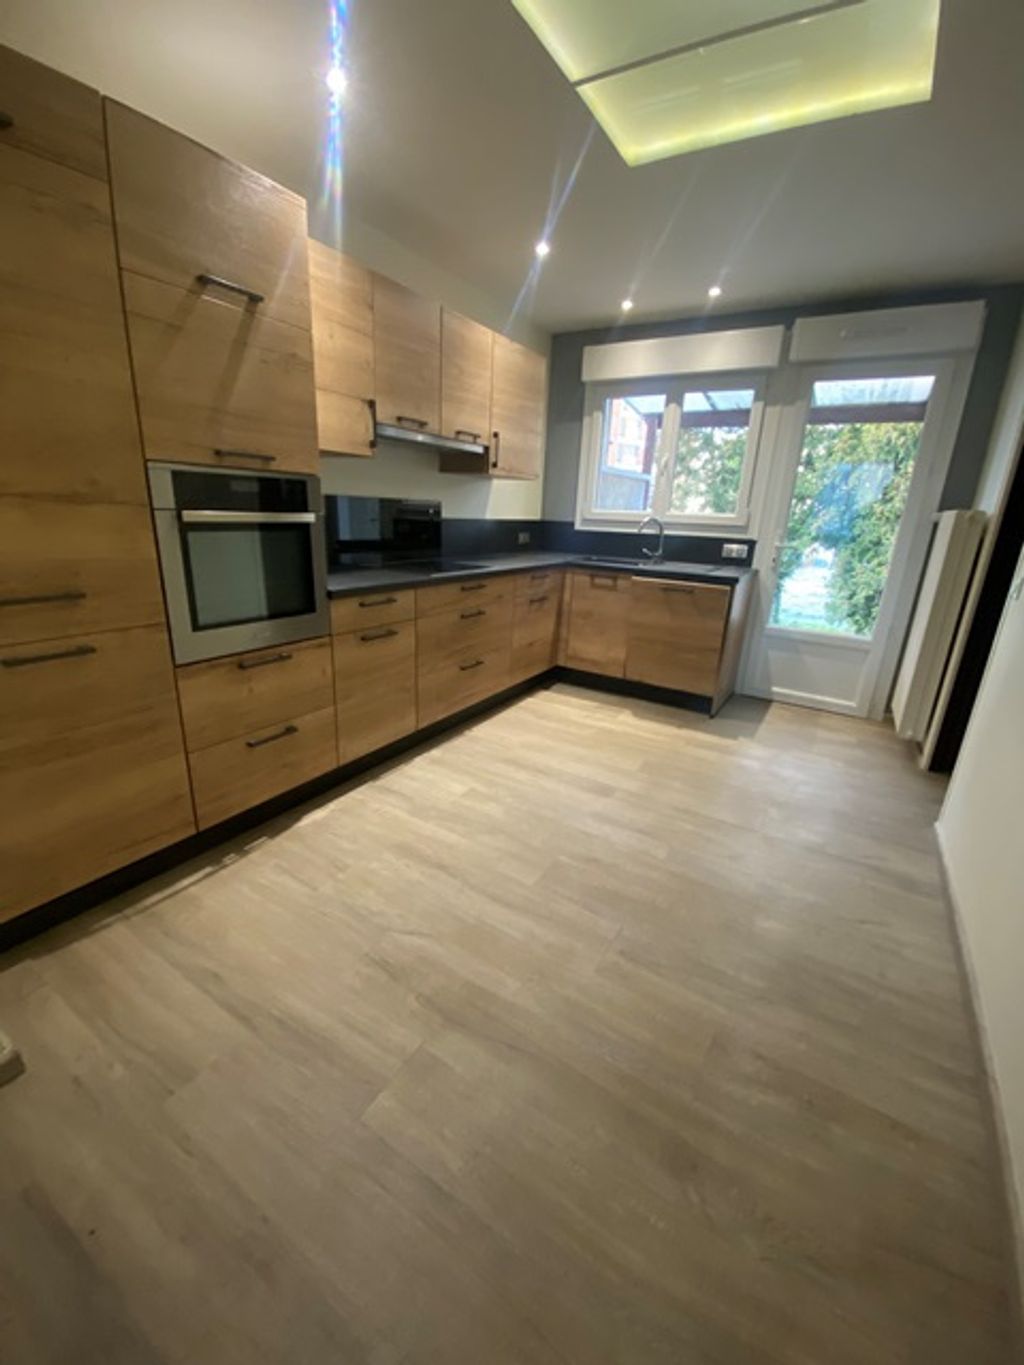 Achat maison à vendre 3 chambres 96 m² - Amiens